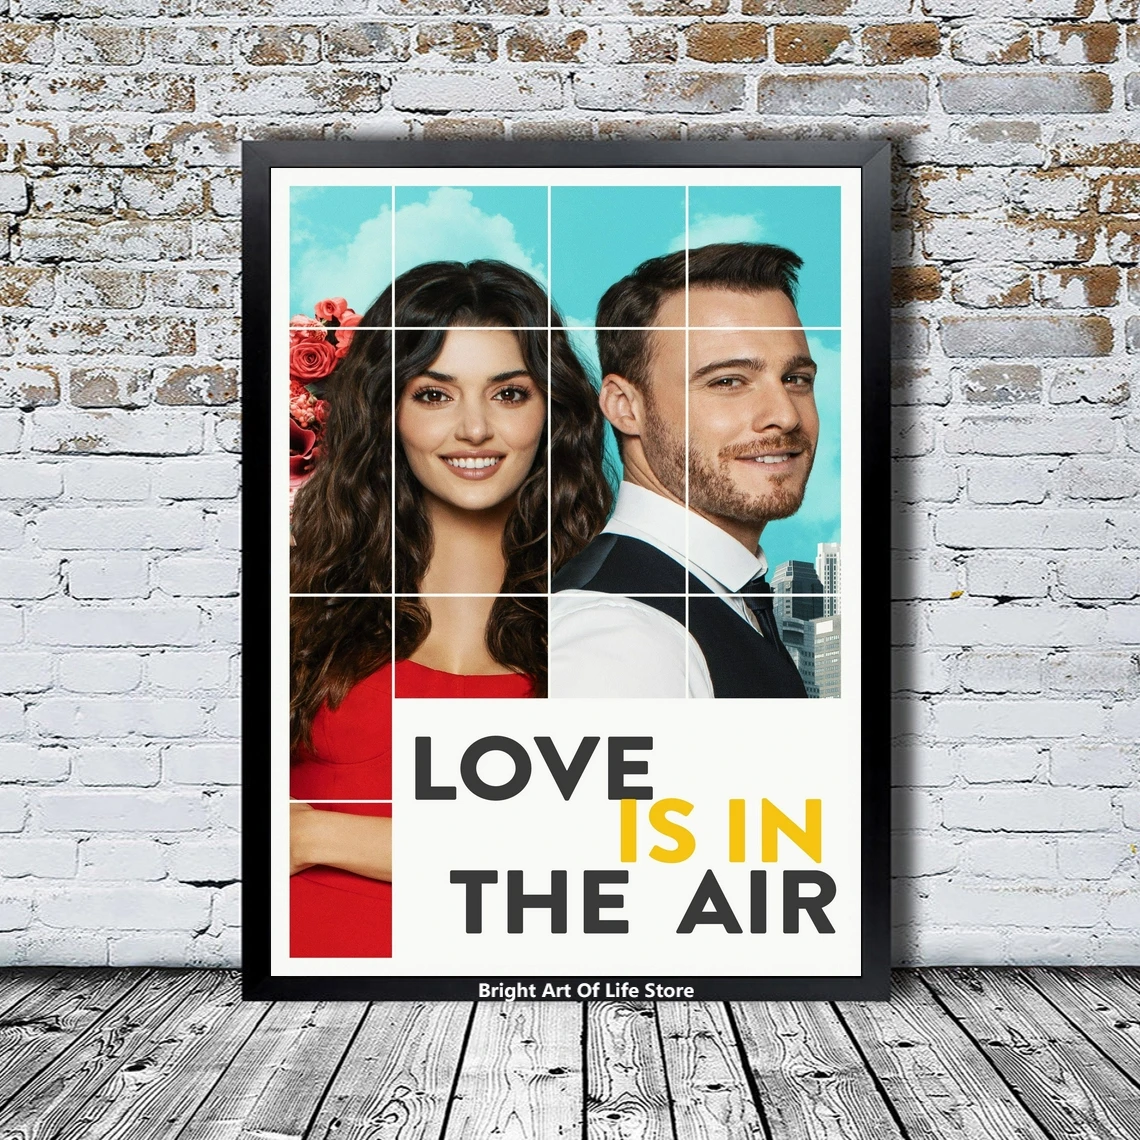 

Постер Love Is In The Air со звездами и актёрами, ТВ-сериал, Холщовый постер, фотопечать, настенная живопись, домашний декор (без рамки)